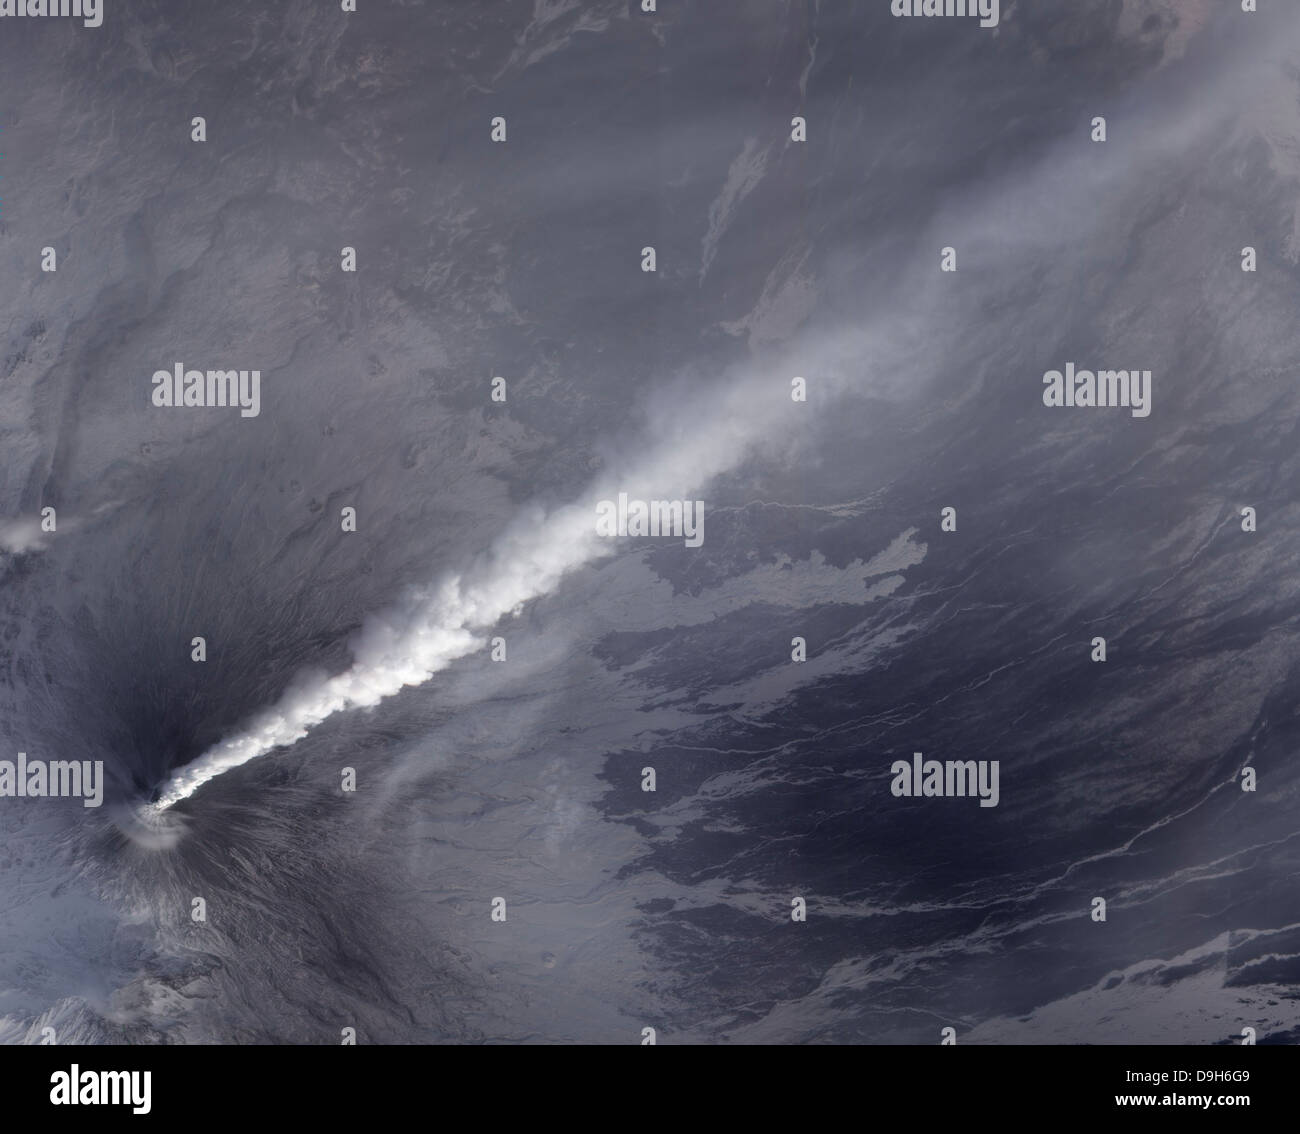 4 dicembre 2010 - Una pioggia di cenere, di vapore e altri gas vulcanici flusso dal vulcano Klyuchevskaya. Foto Stock